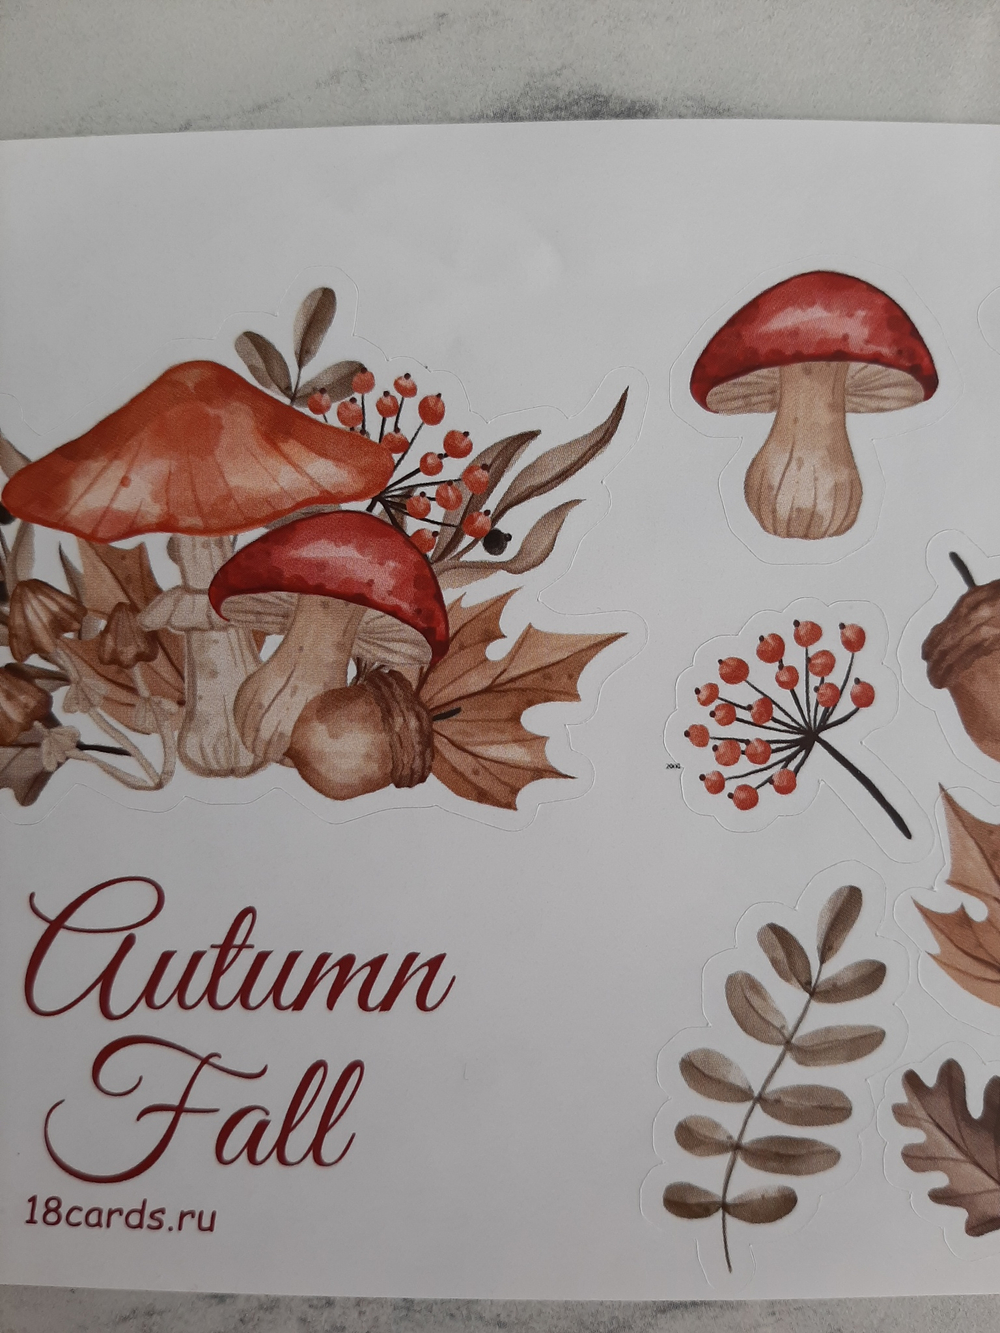 Наклейки фигурные "Autumn fall", 13 шт